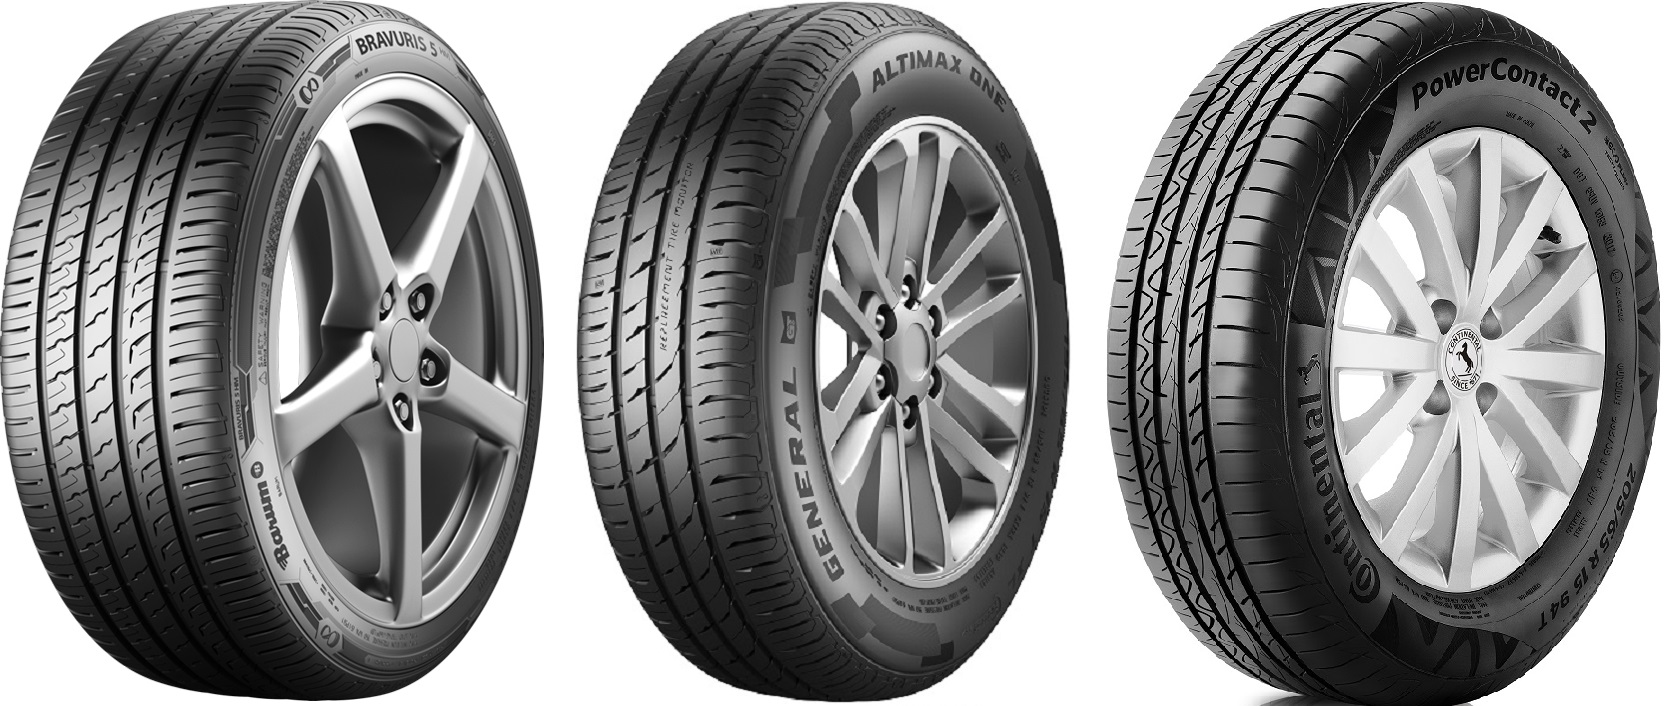 Continental apresenta portfólio de pneus de passeio na Autopar